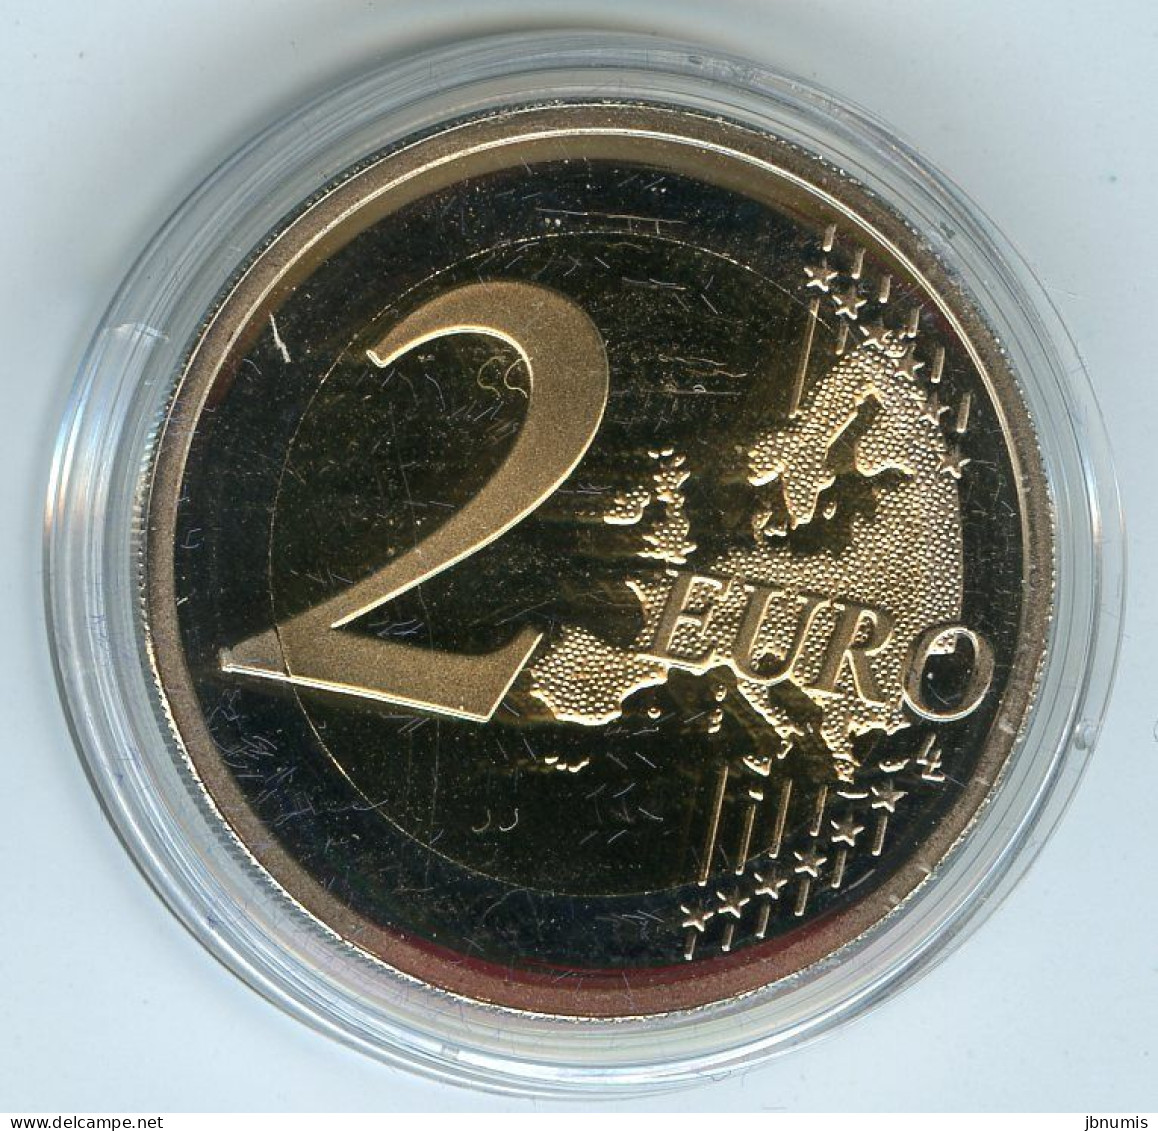 Irlande Ireland Eire 1 Cent à 2 Euro 2007 Coffret Officiel BE Proof PP Avec La 2 Euro 50 Ans Traité De Rome - Ierland